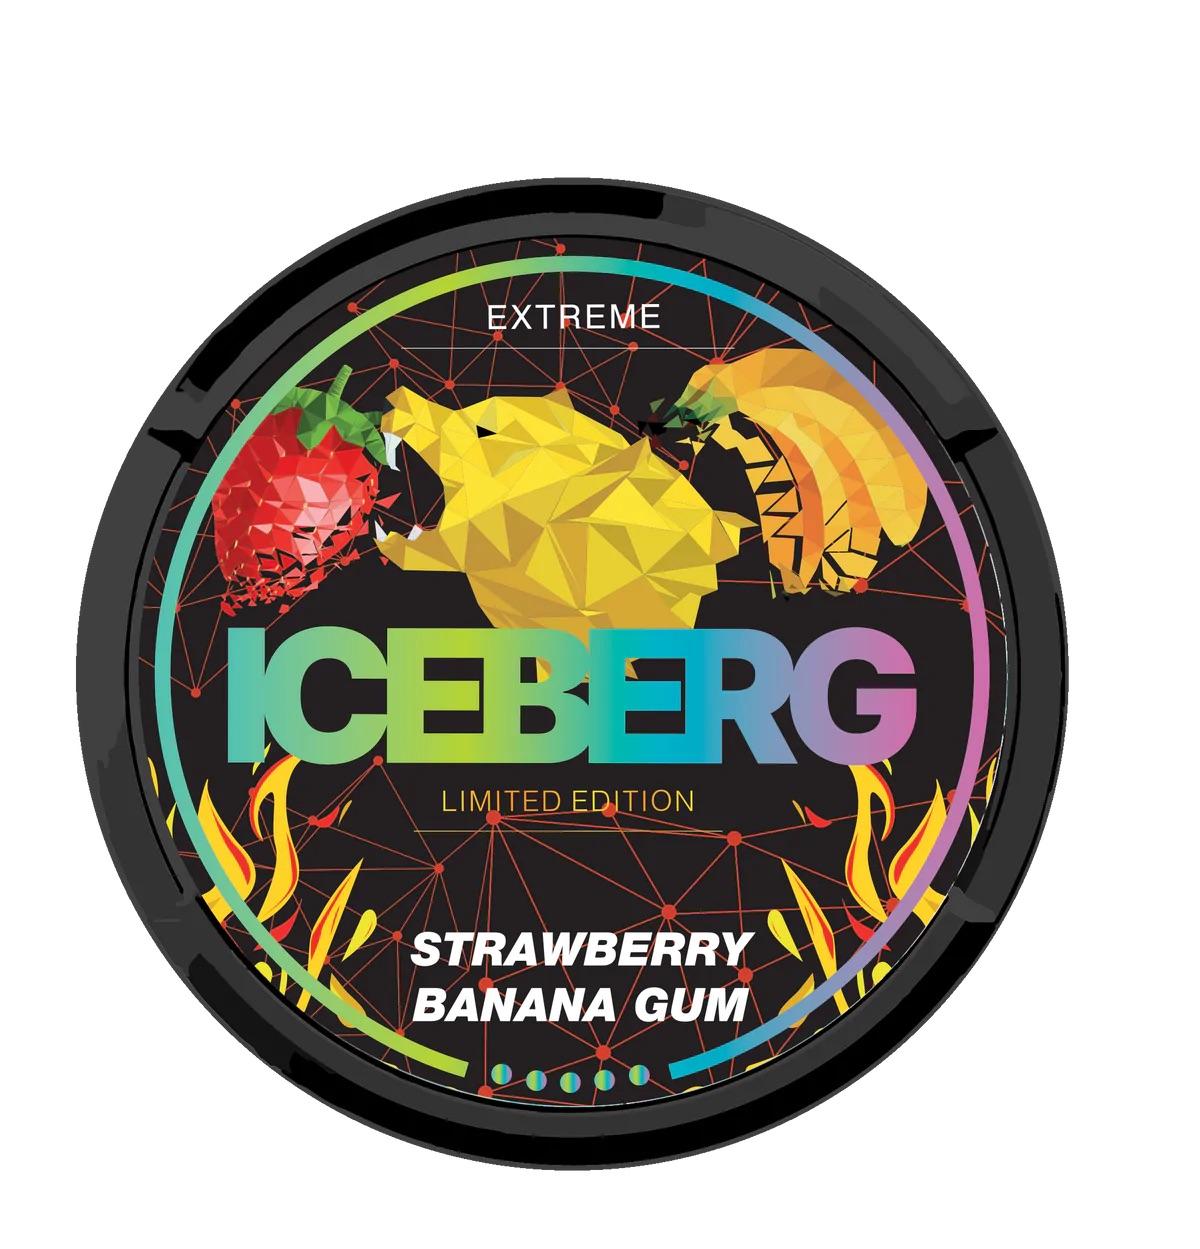 Iceberg extreme. Iceberg Banana Gum. Iceberg Limited Edition - Strawberry. Extreme Gum.